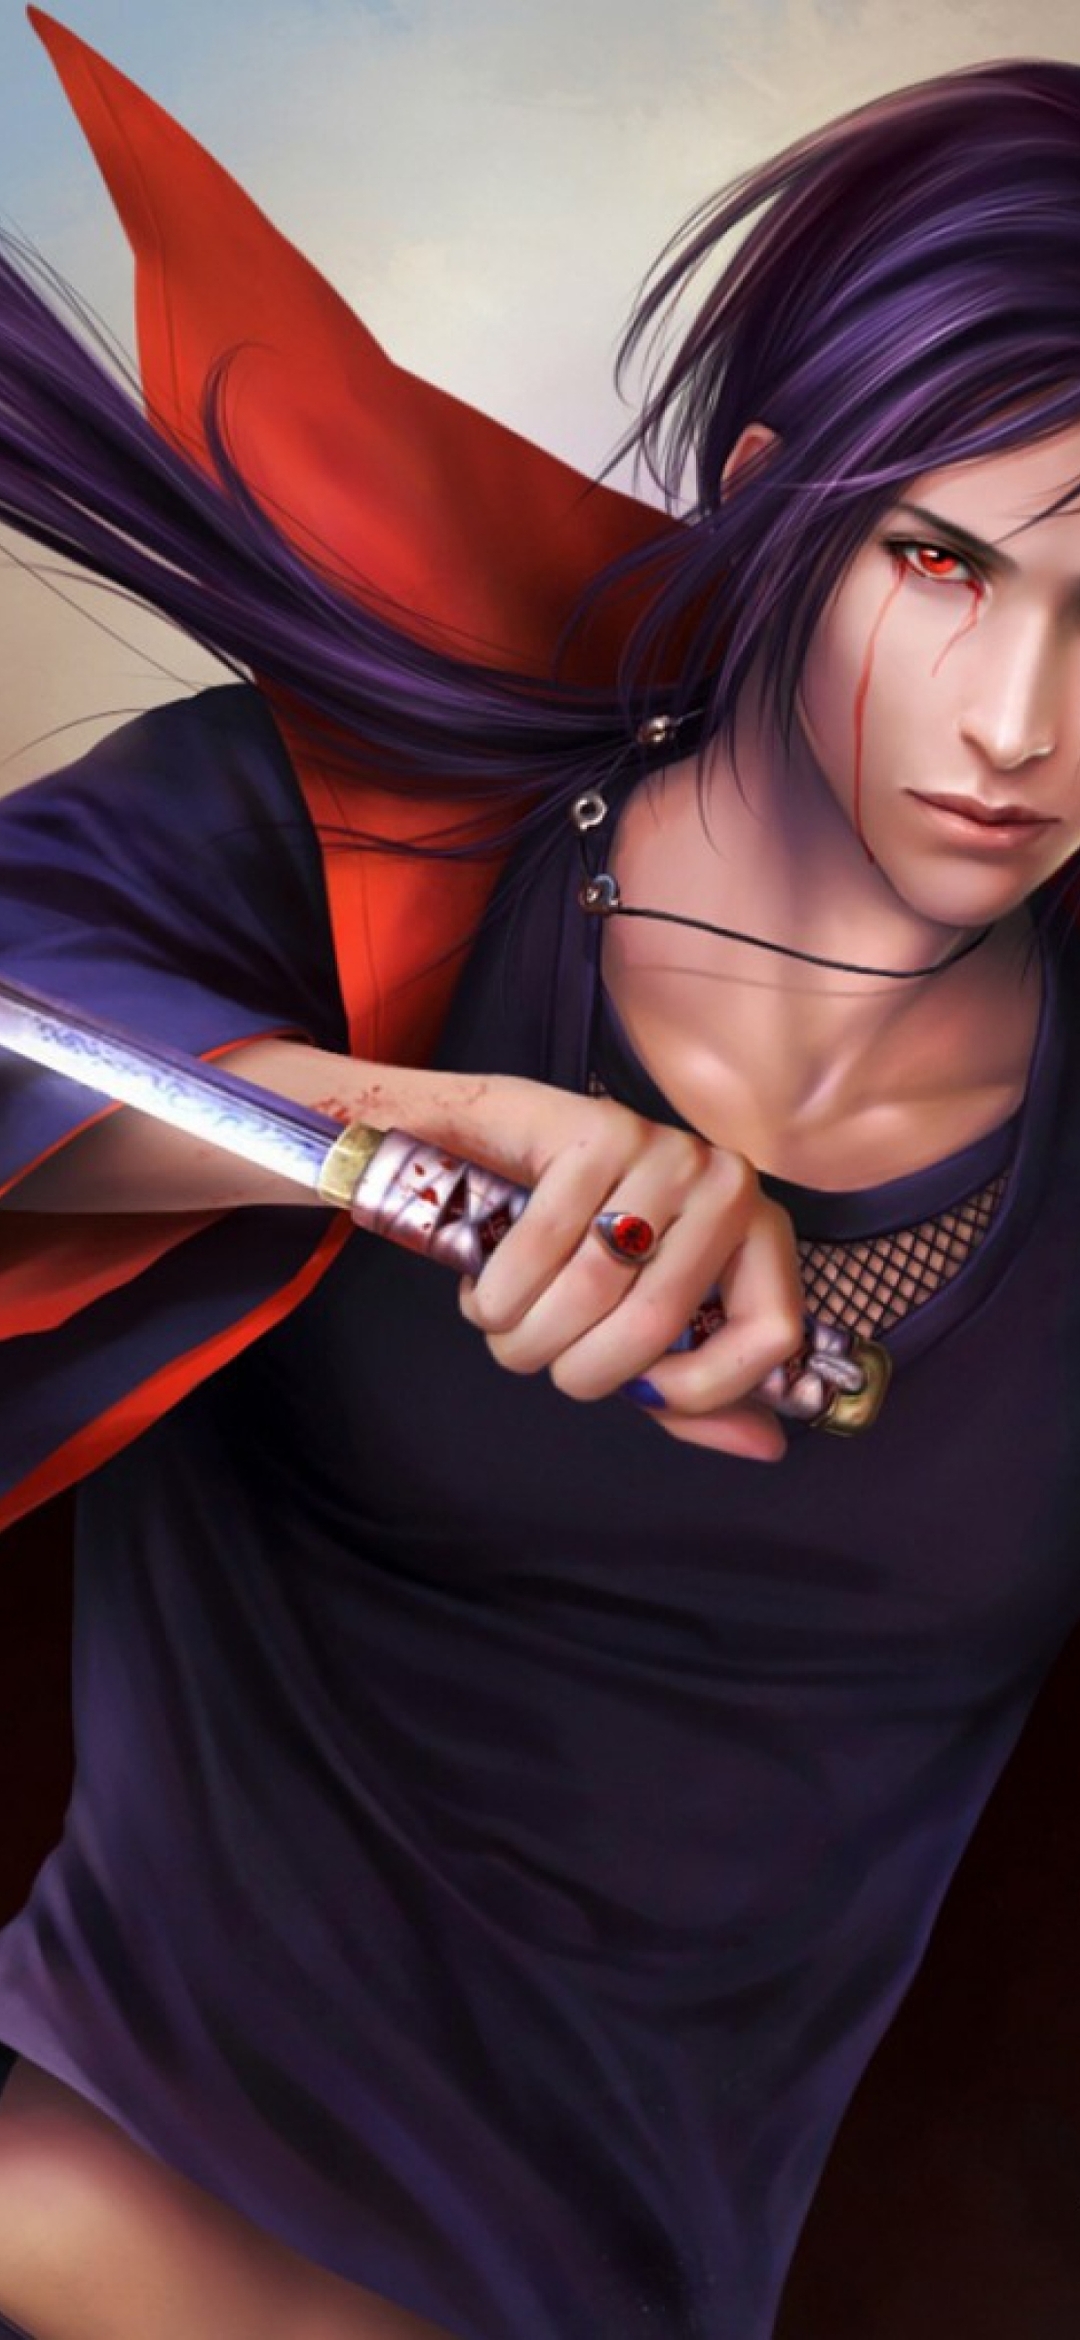 Картинка: Итачи Учиха, меч, оружие, взгляд, плащ, волосы, перья, аниме, Наруто, перс, кровь, шиноби